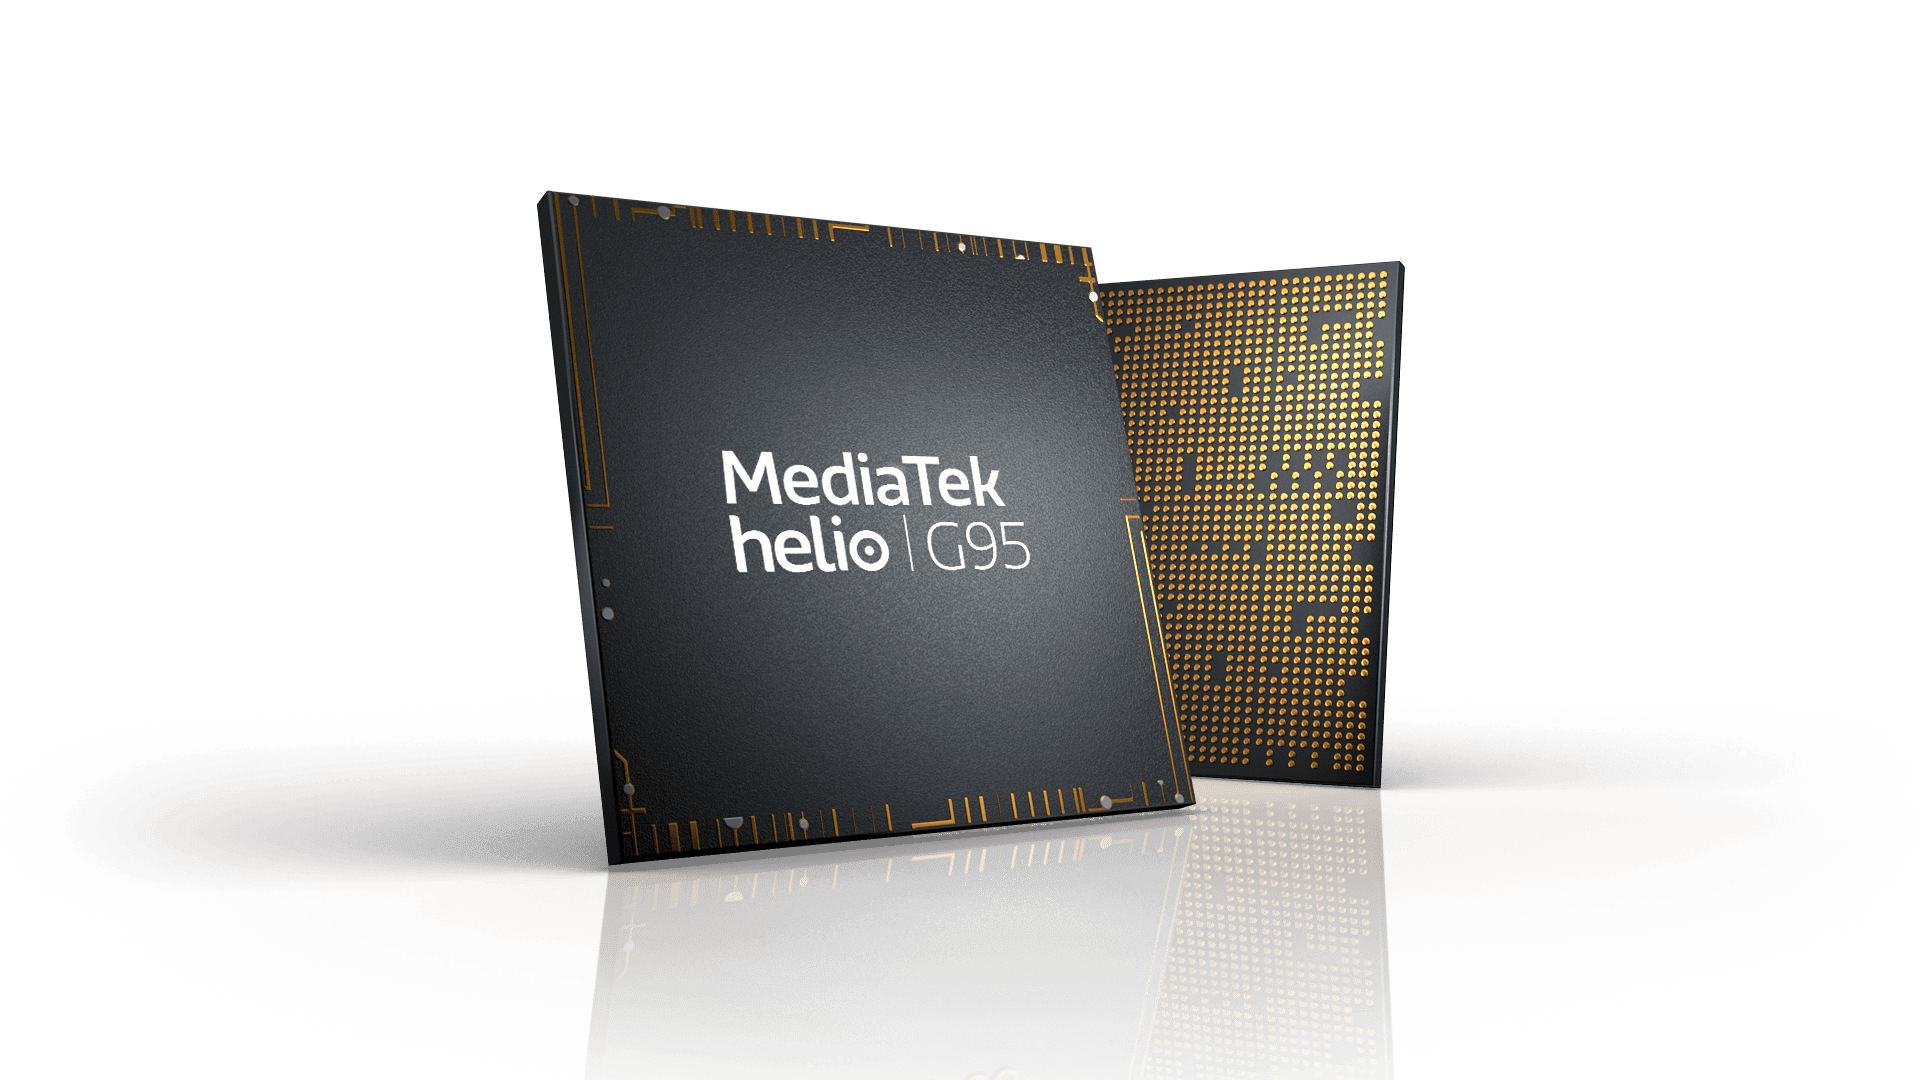 Lanzamiento de MediaTek Helio G95 para teléfonos inteligentes con juegos 4G